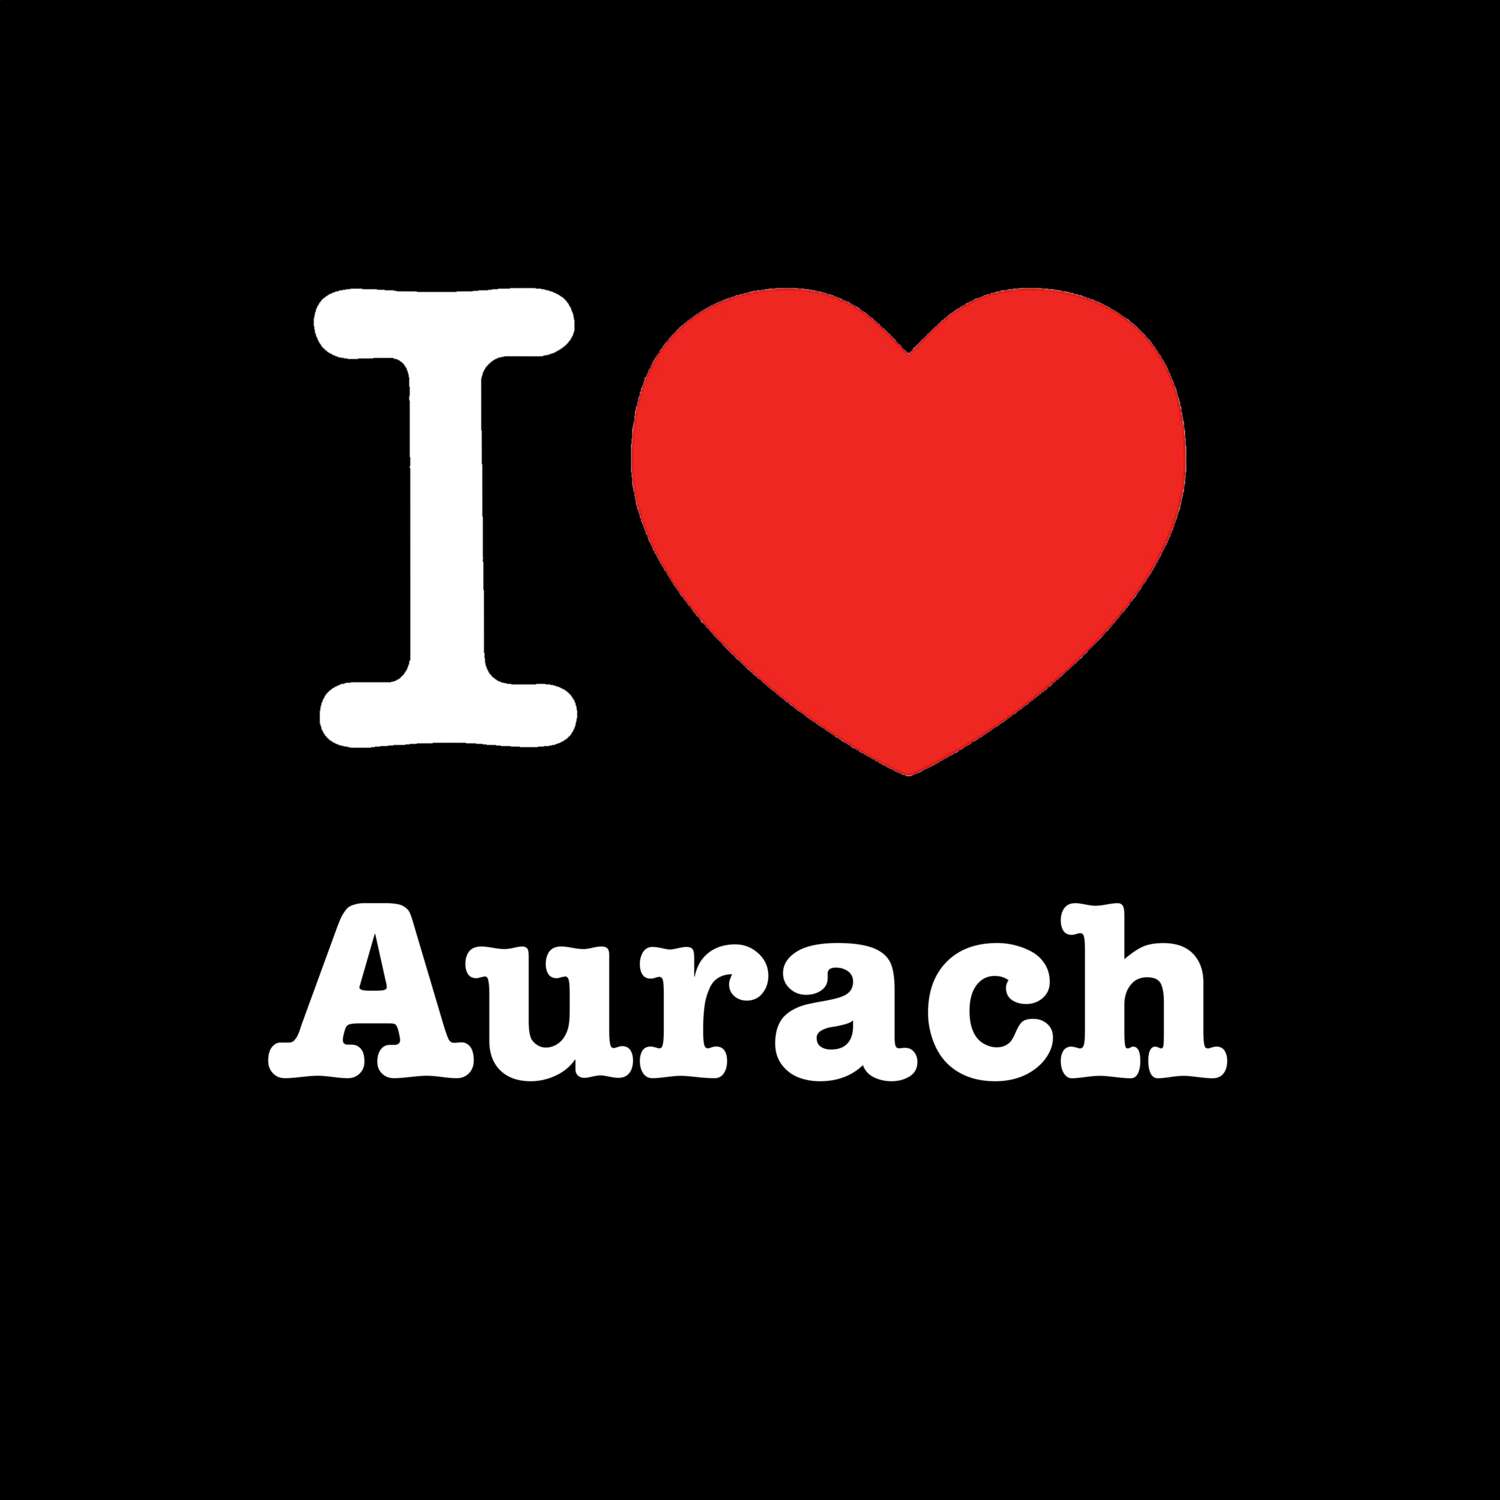 Aurach T-Shirt »I love«